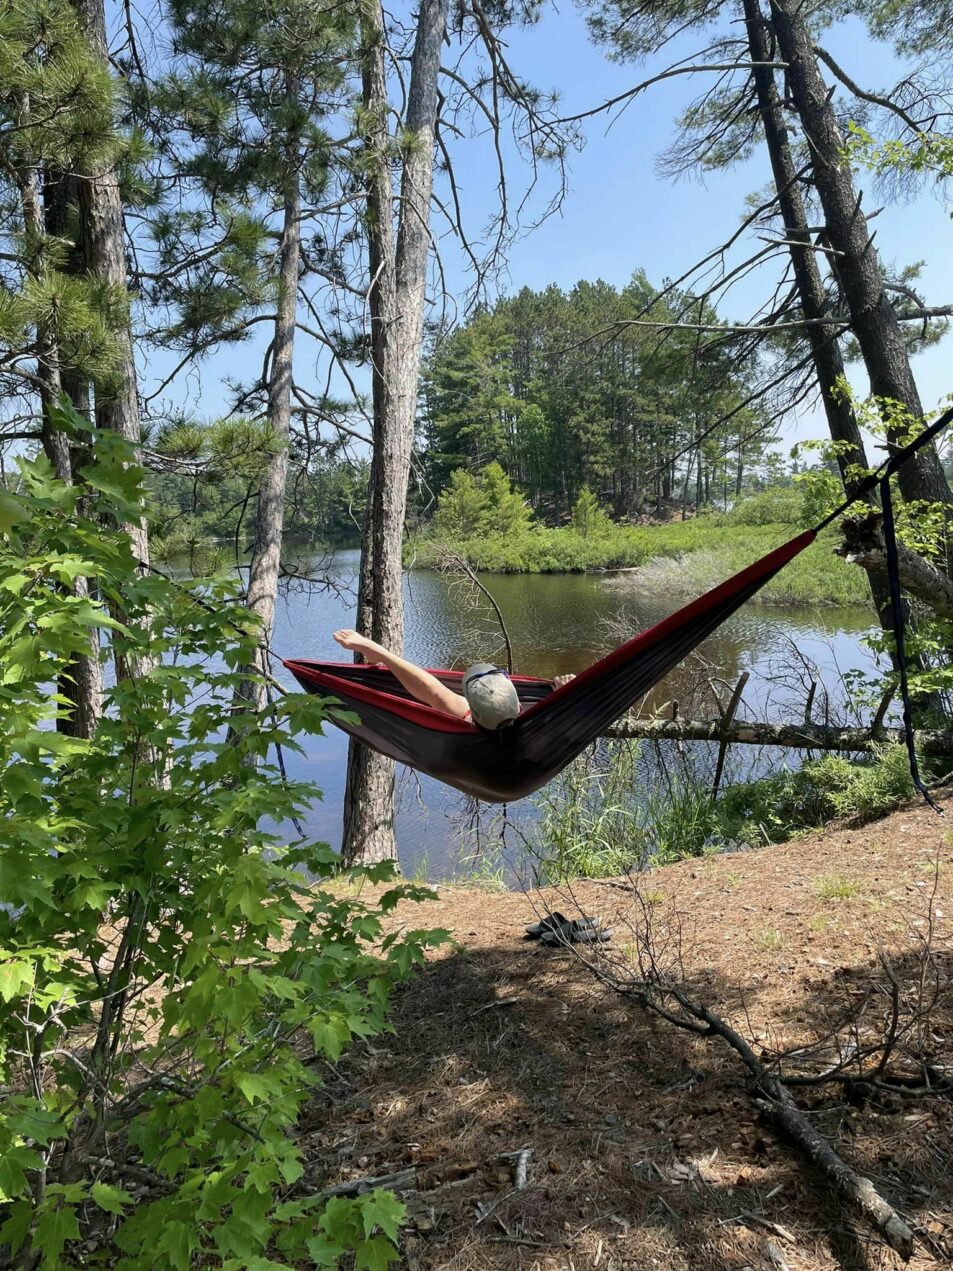 camper hammocking